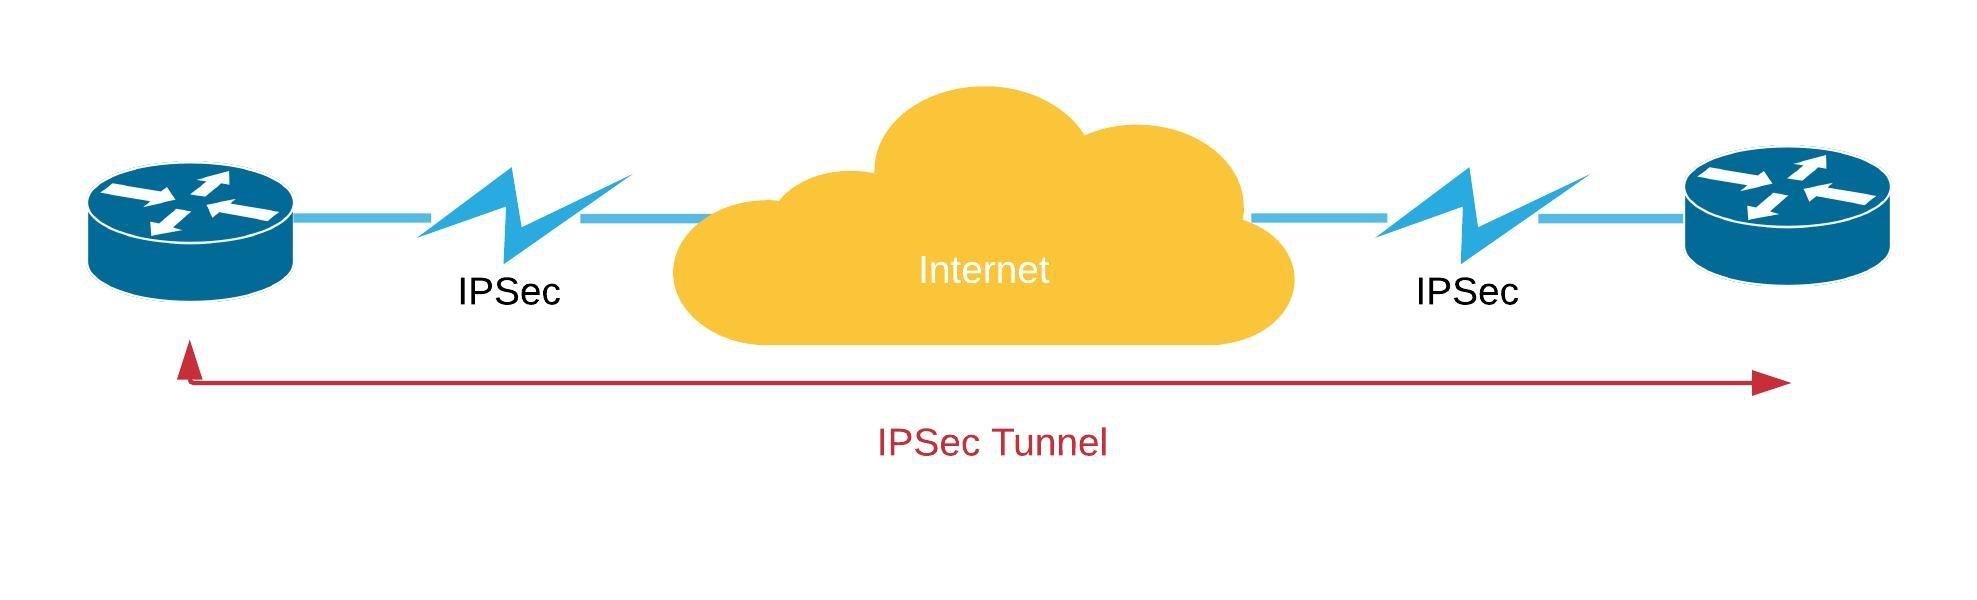 SD WAN over MPLS IPSec